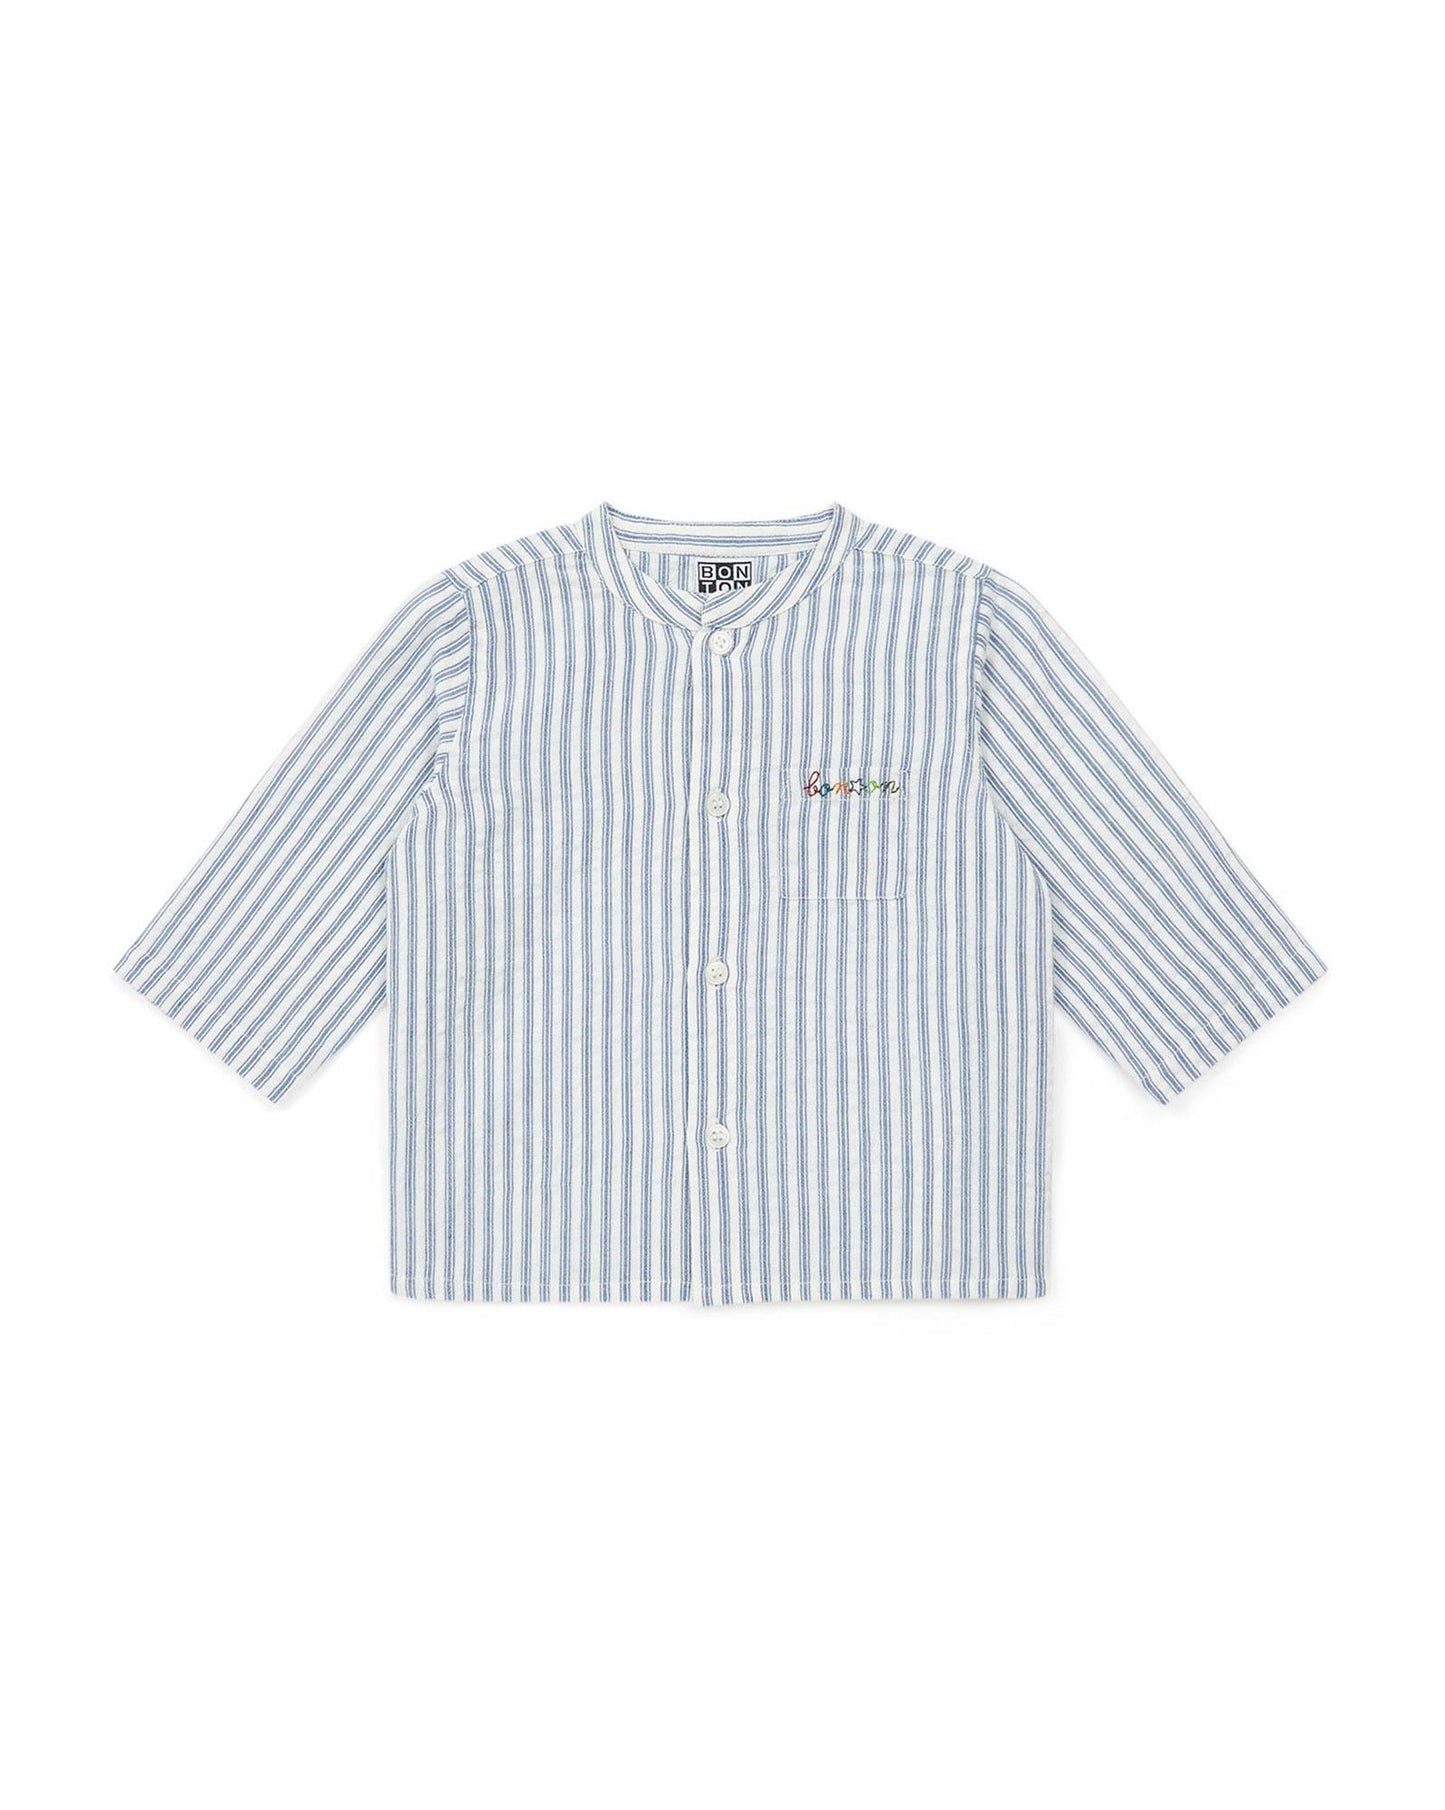 Shirt - Inter Bleue Baby in Poplin striped